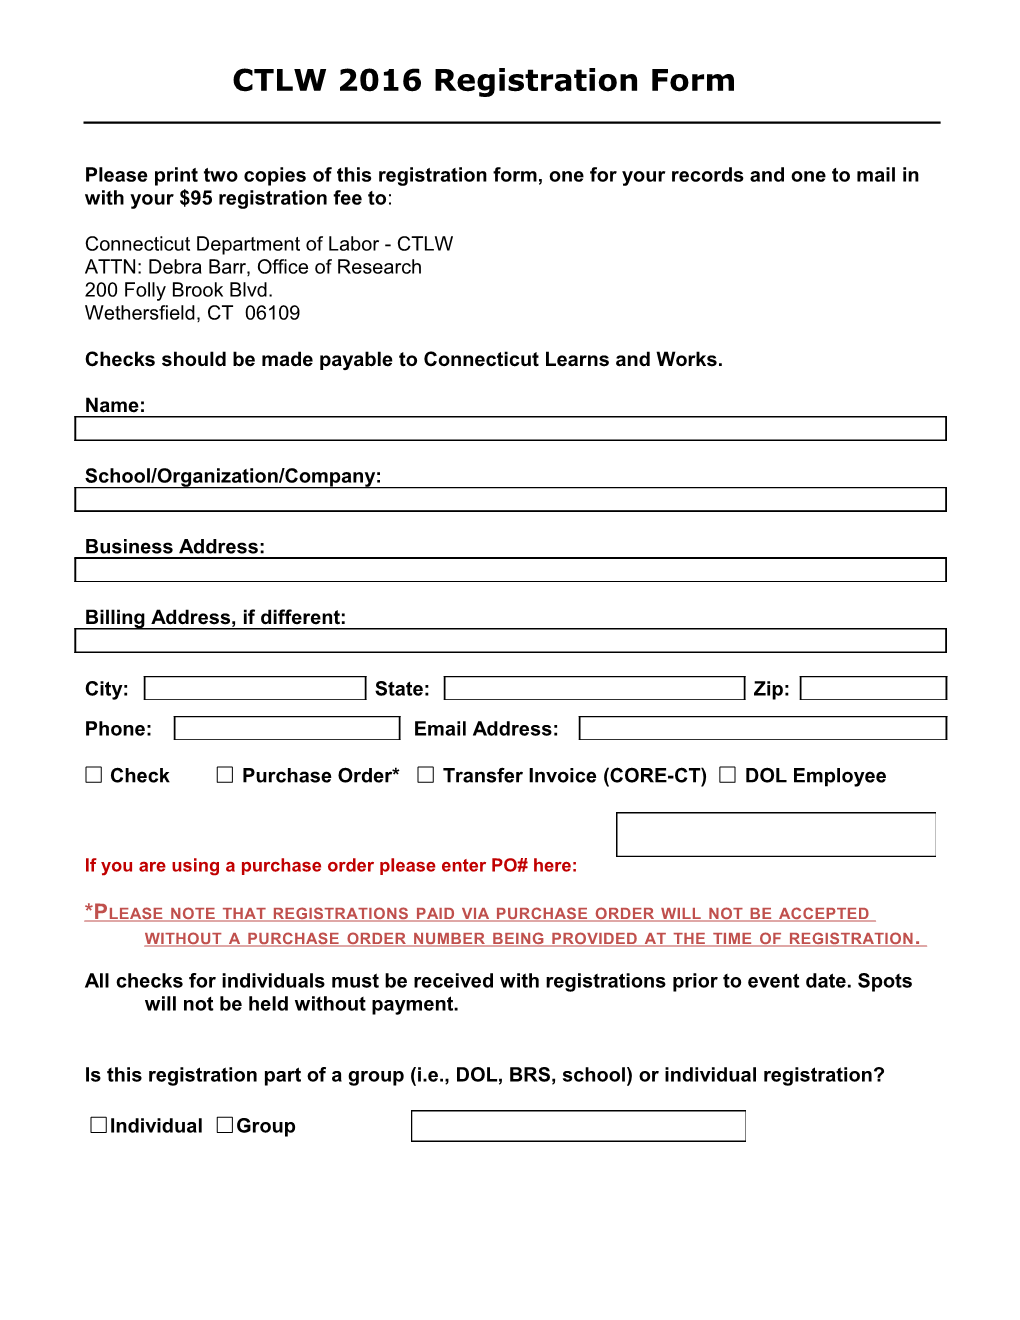 CTLW 2016 Registration Form